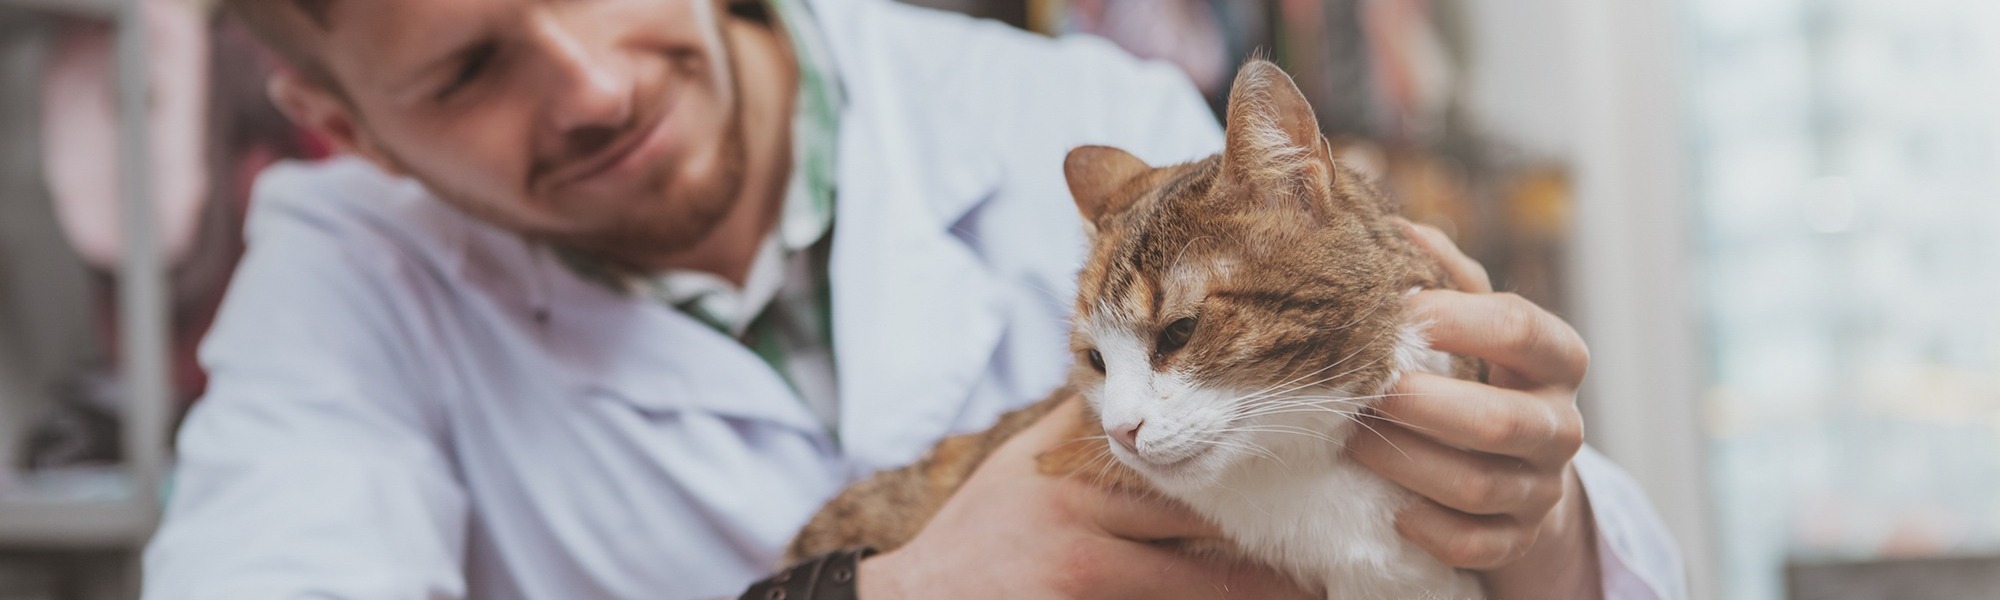 Veterinary Surgeon and Cat